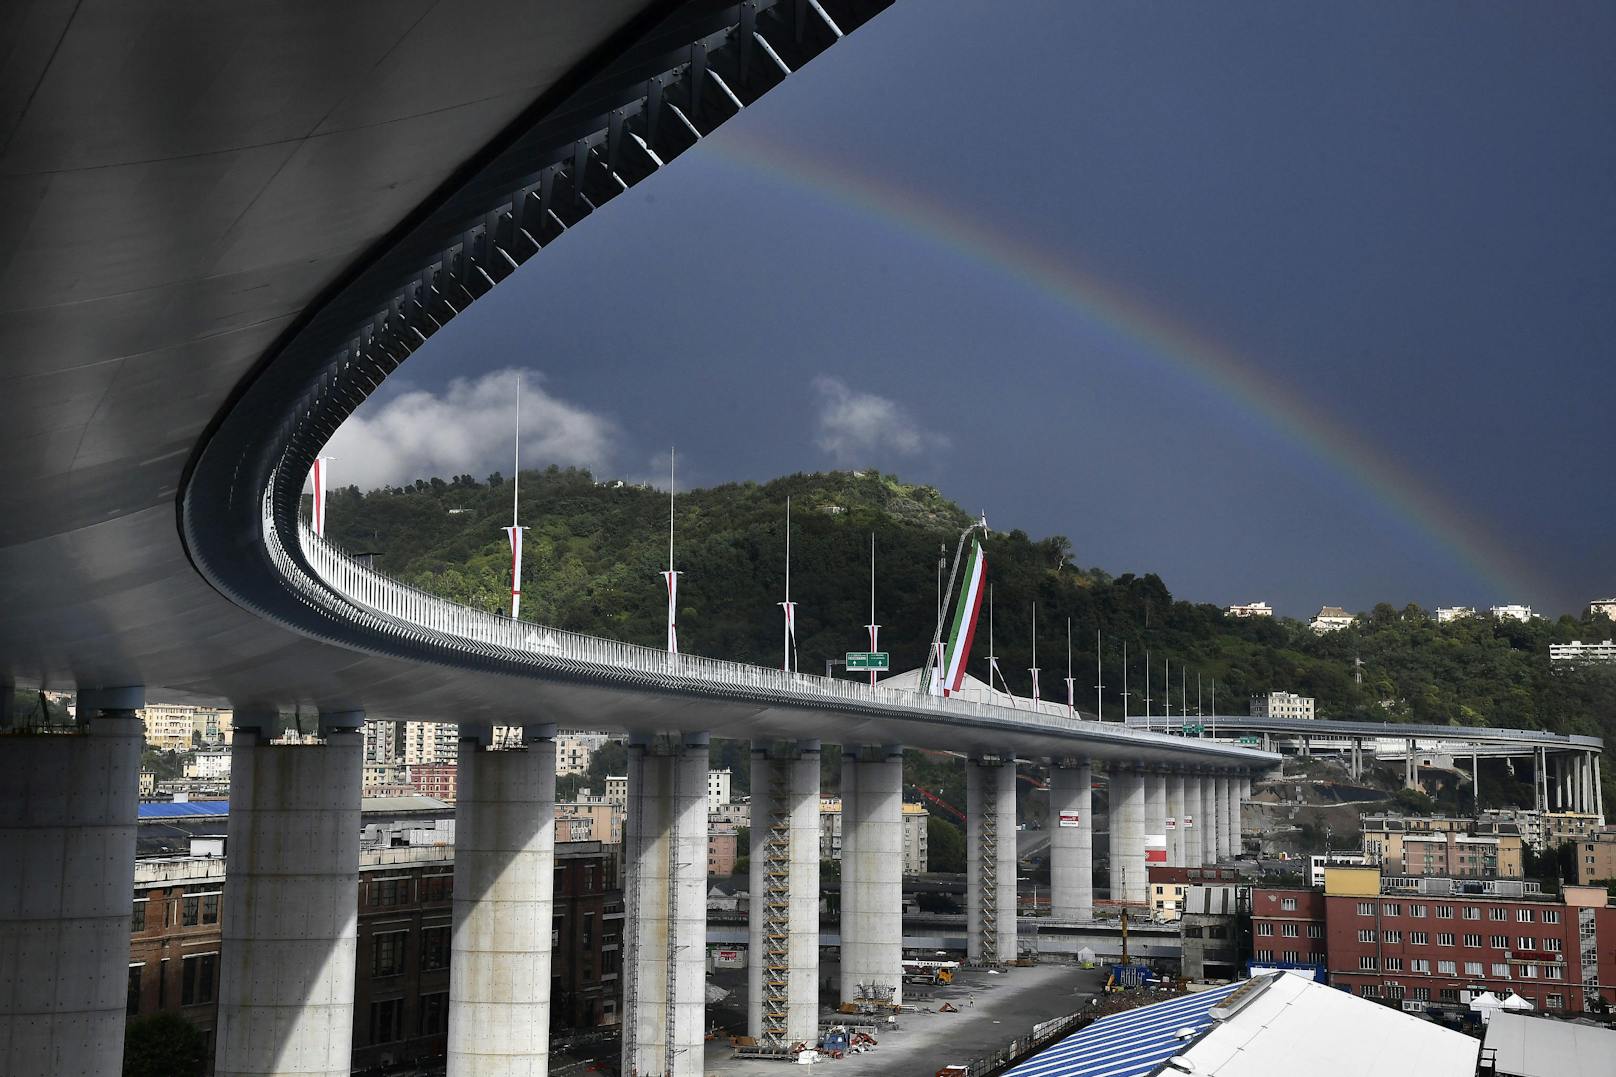 Genua weiht zwei Jahre nach Katastrophe neue Brücke ein